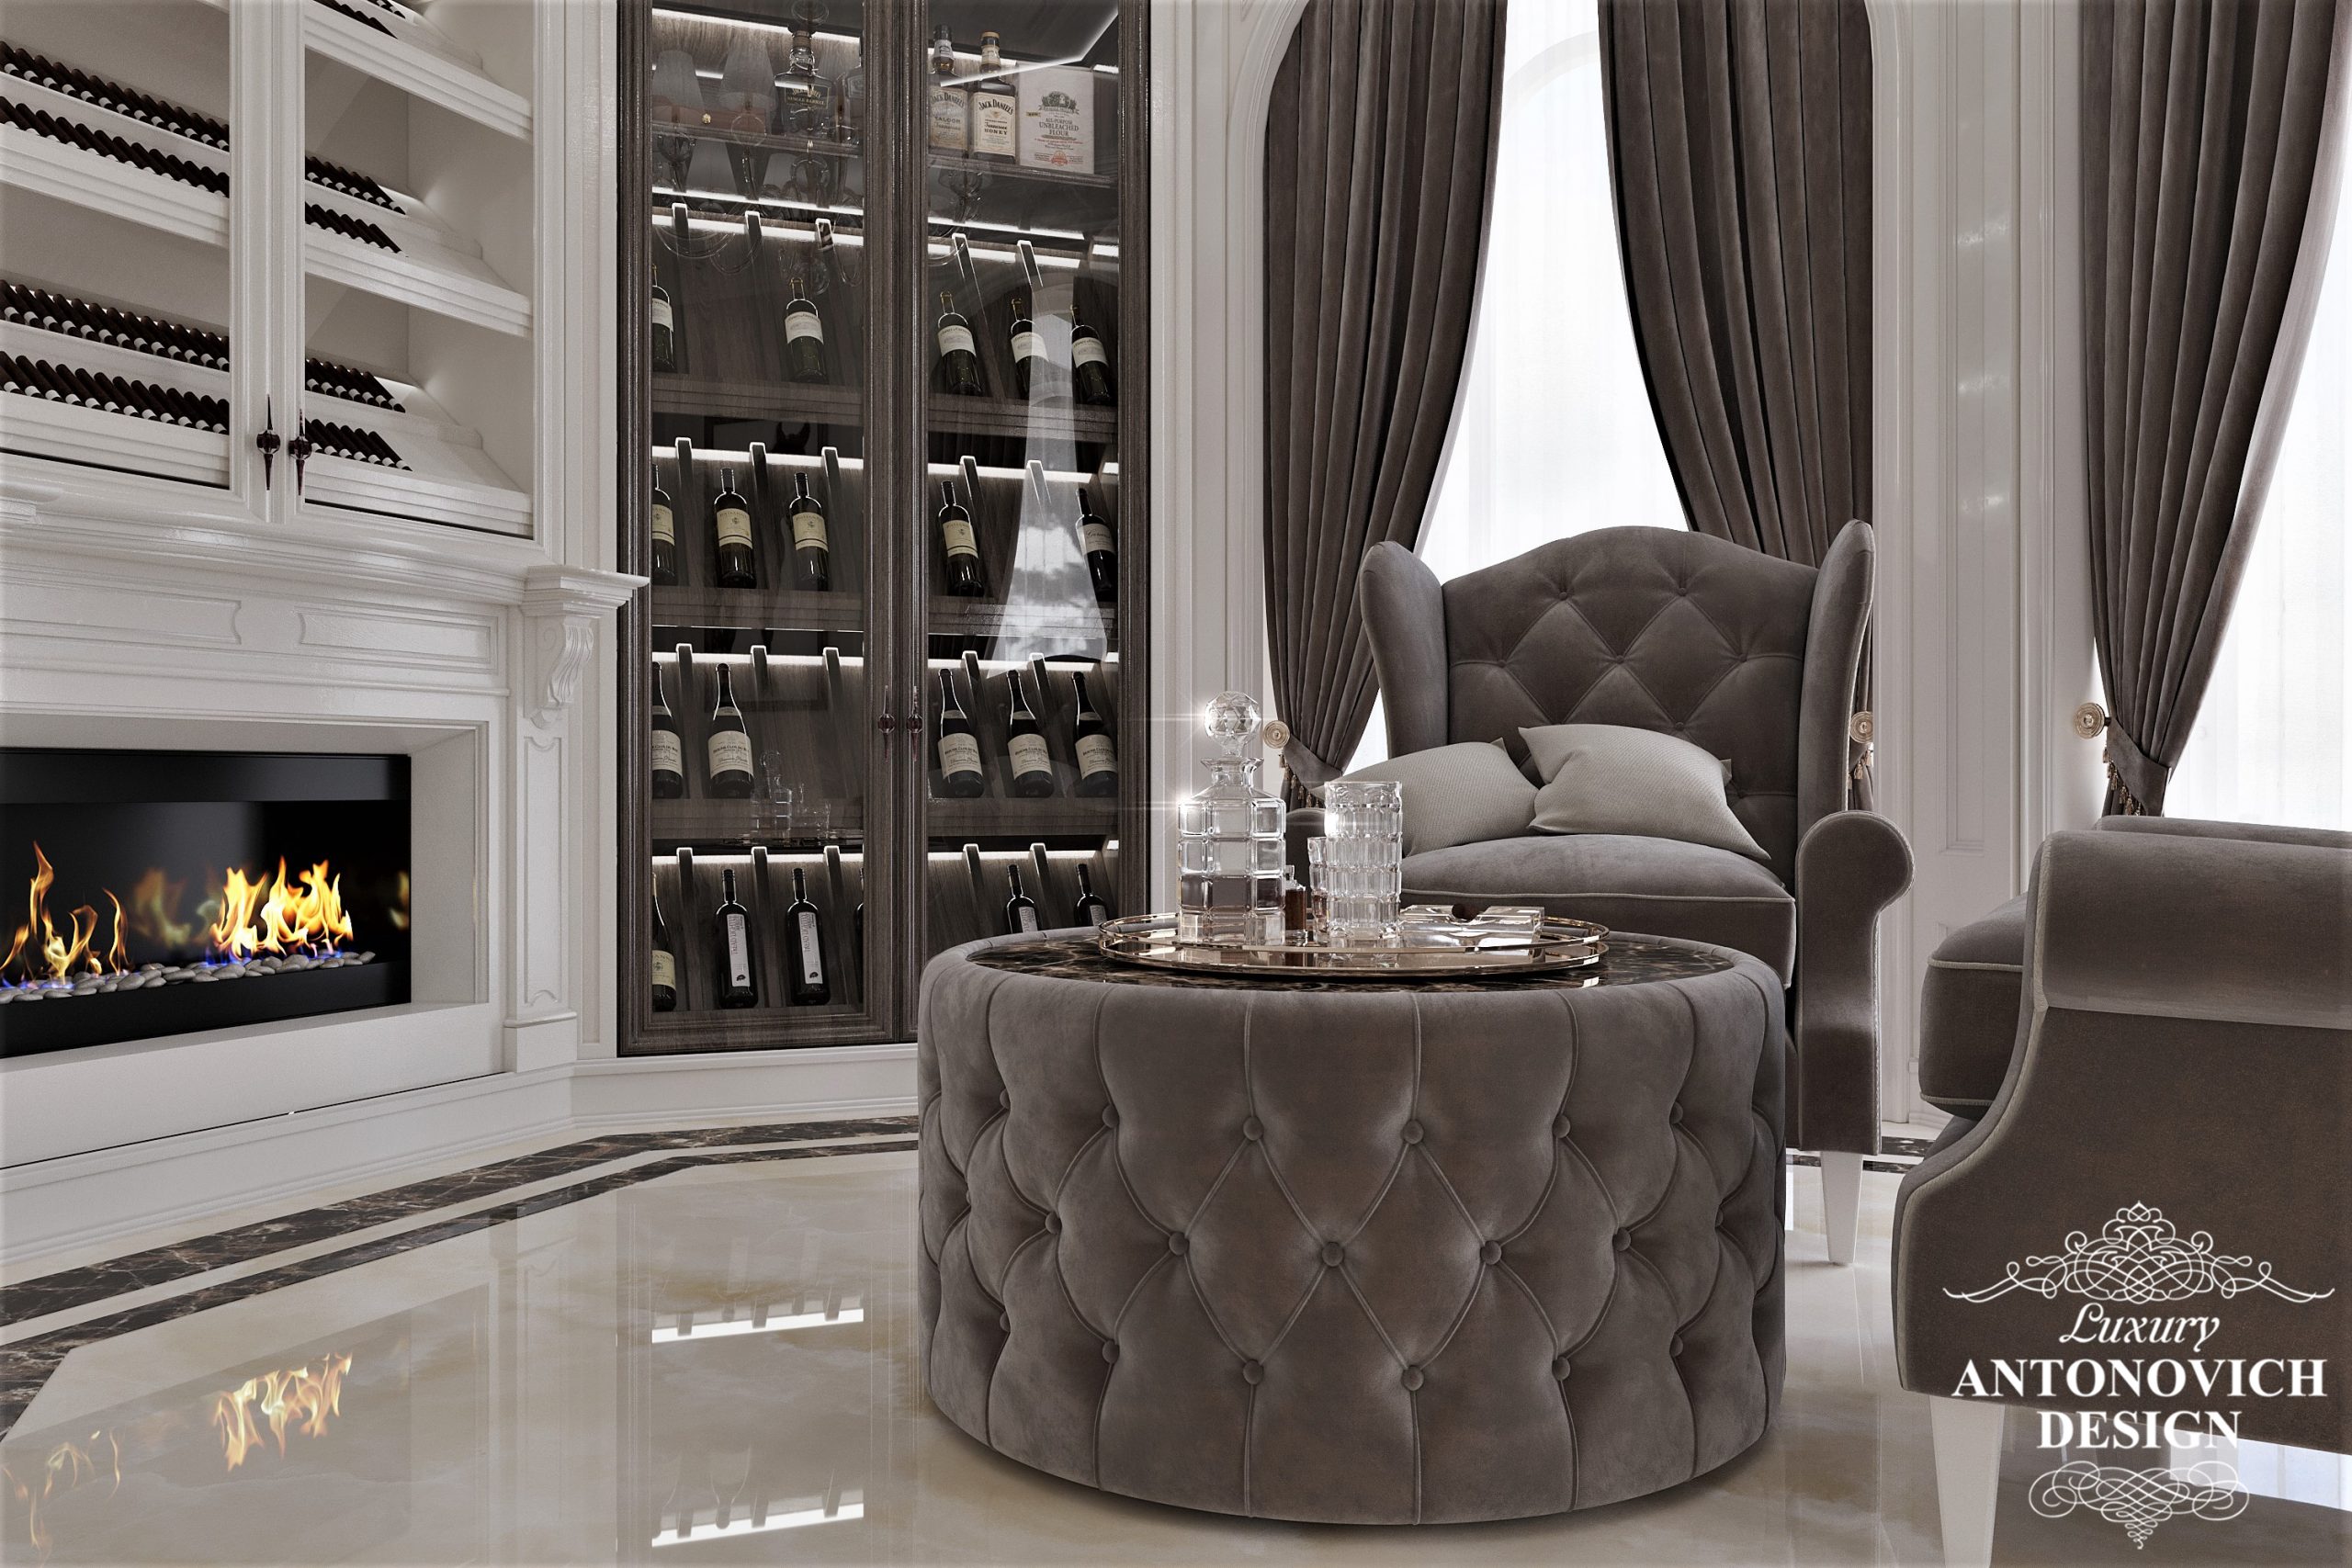 Комфортная, удобная мягкая мебель из дорогих материалов в дизайнерской комнате отдыха